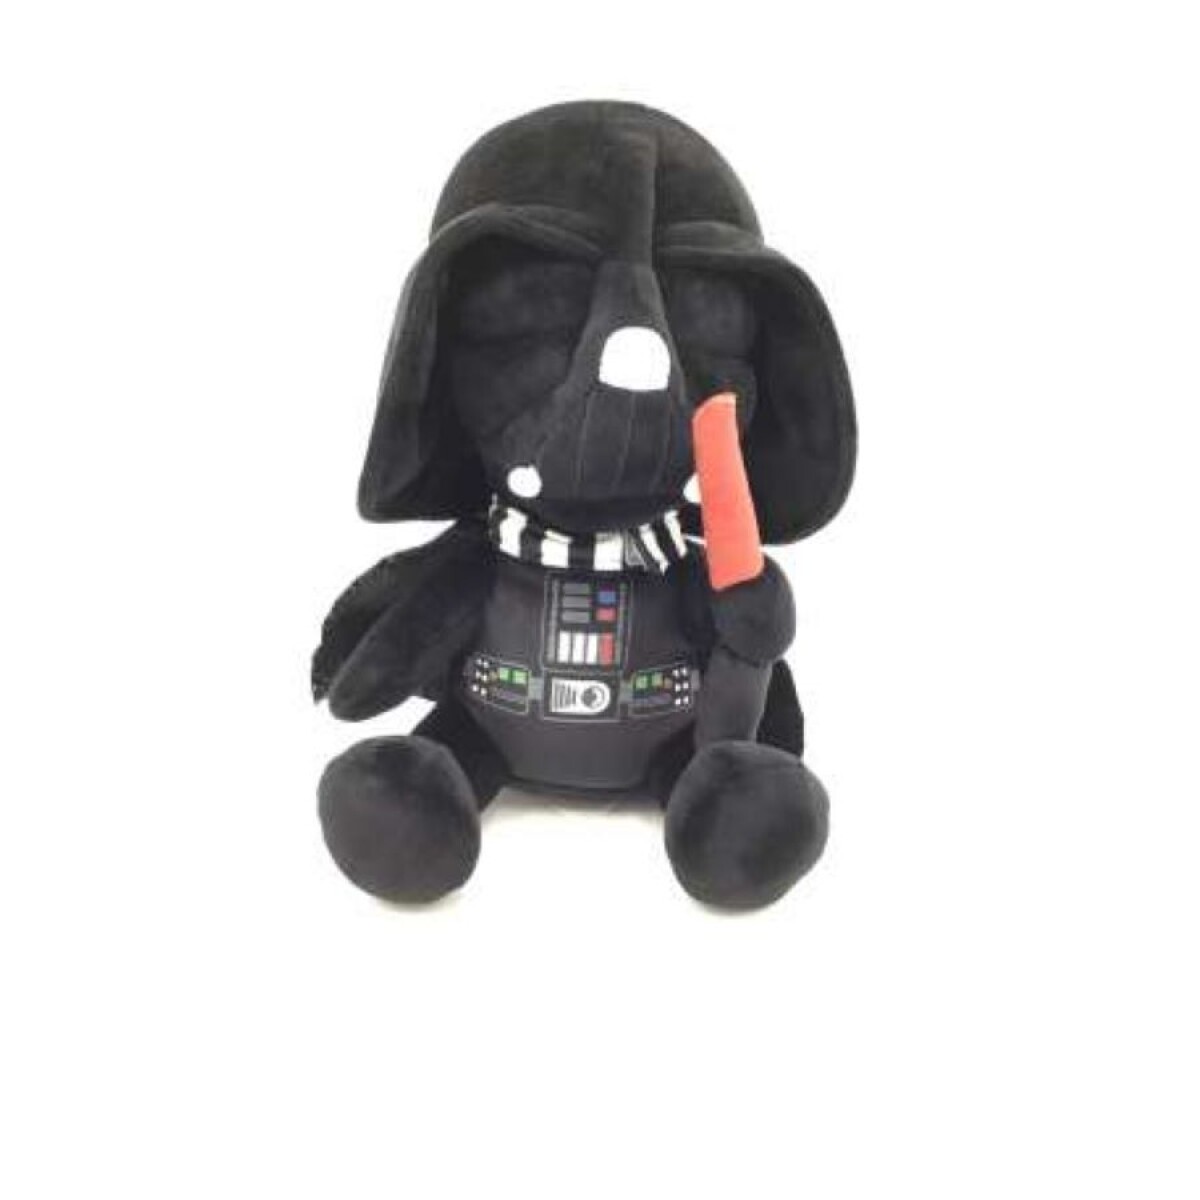 Figura Star Wars Vader 25CM - 001 